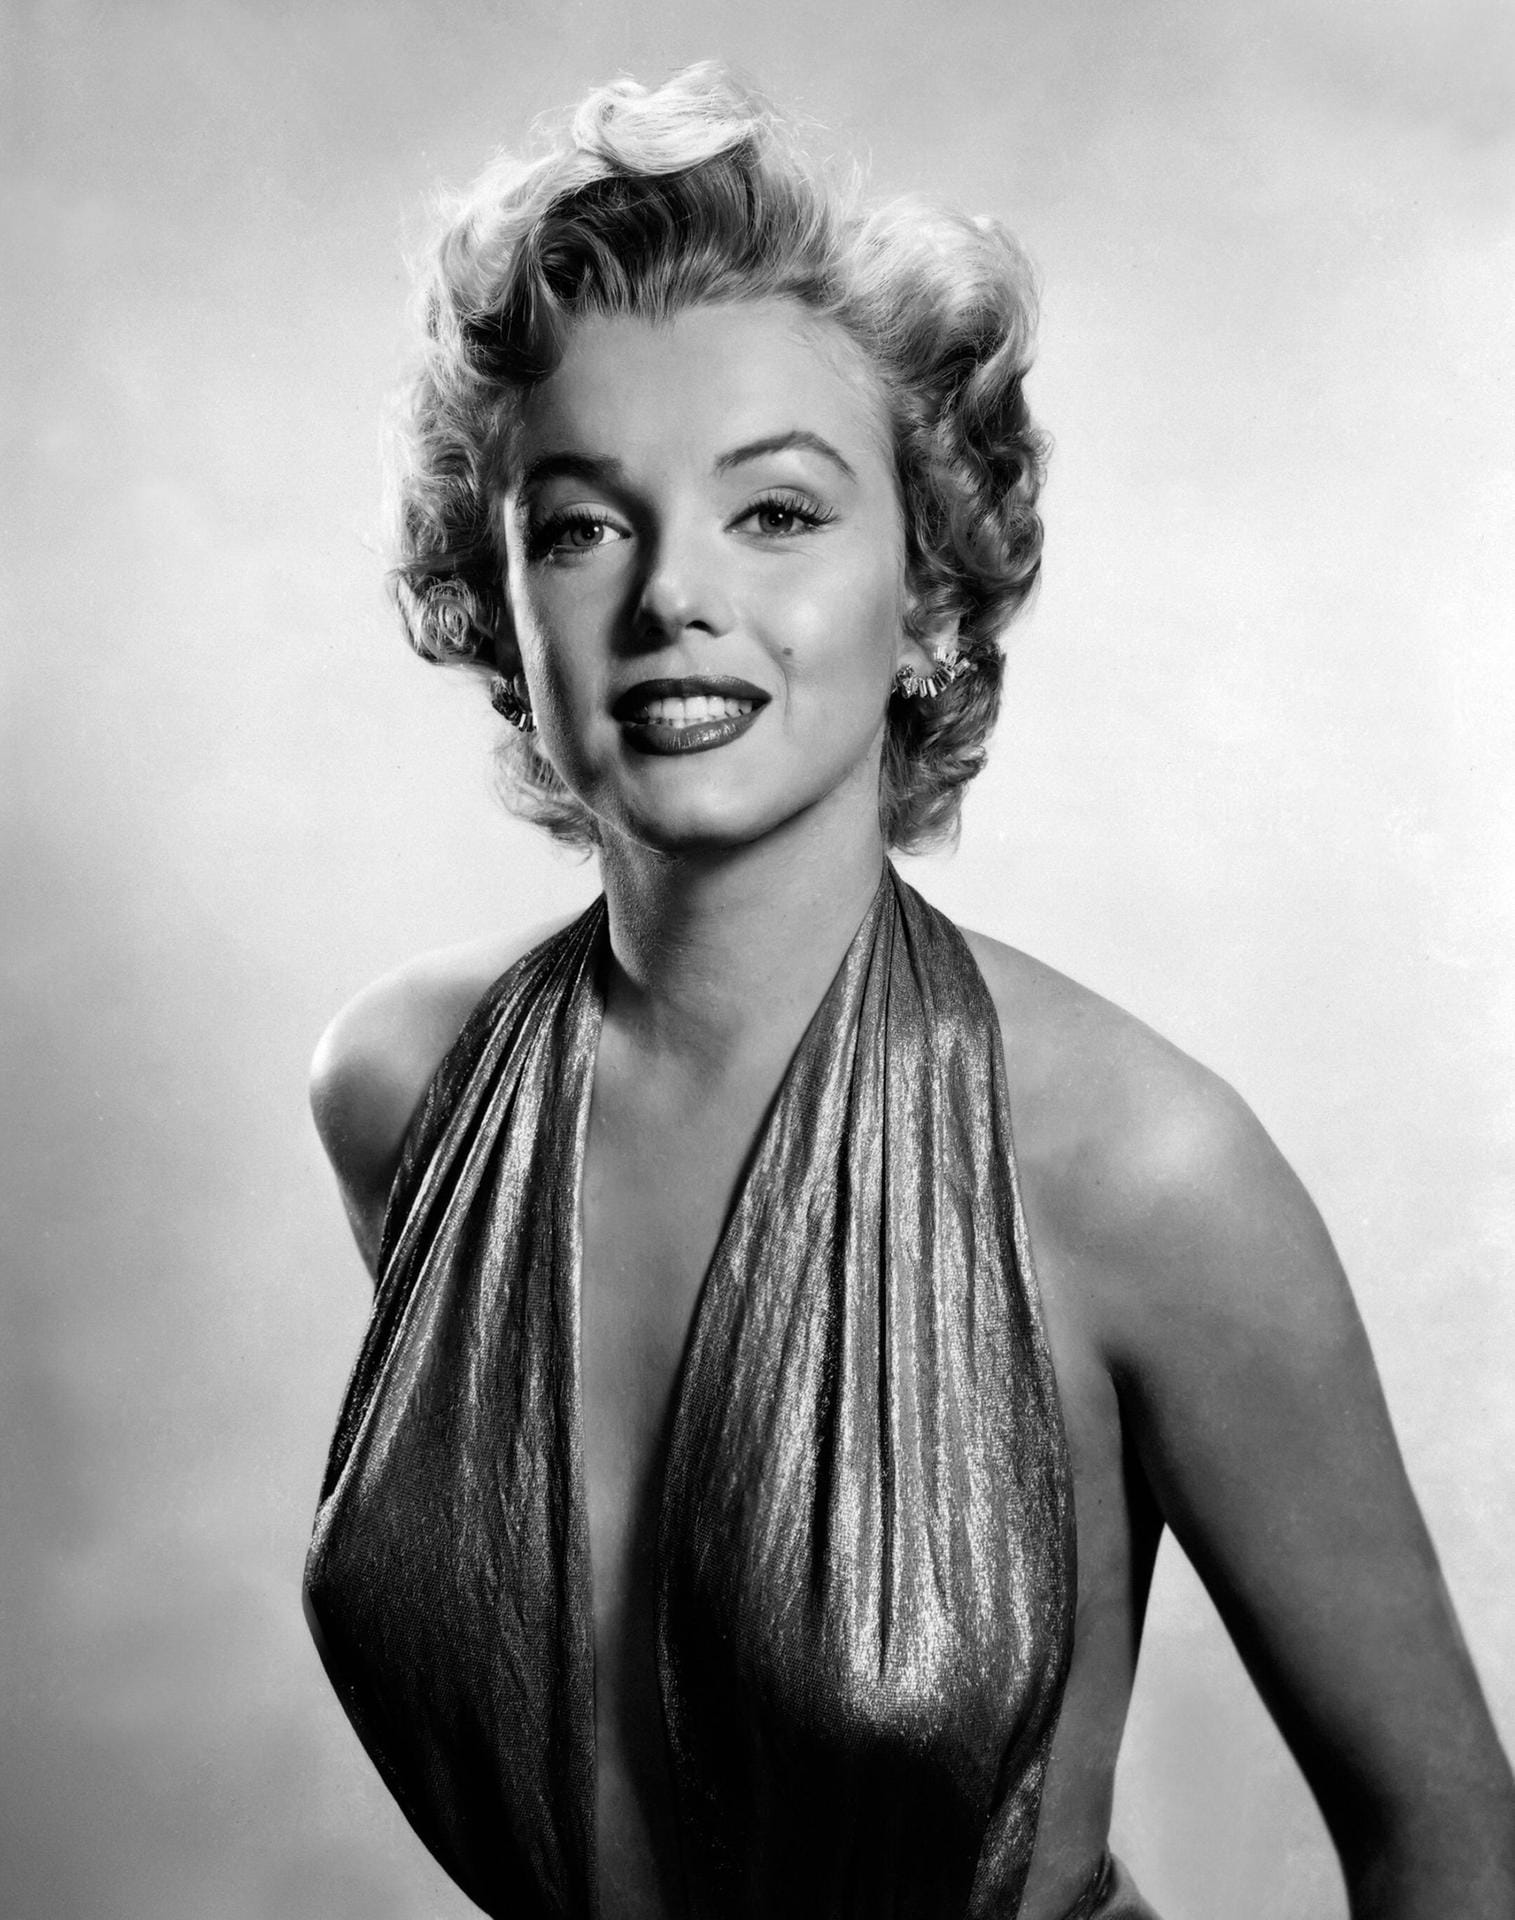 Marilyn Monroe (1926 -1962): Als Model, Schauspielerin und Sängerin wurde sie bekannt und zum absoluten Sexsymbol der 50er-Jahre. Mit bürgerlichem Namen hieß "die Monroe" Norma Jeane Baker. Zu ihren Lebzeiten war sie die meist fotografierte Frau der Welt. Der Ruhm jedoch lastete schwer auf ihr. Mit nur 36 Jahren starb sie an einer Überdosis eines Beruhigungsmittels.